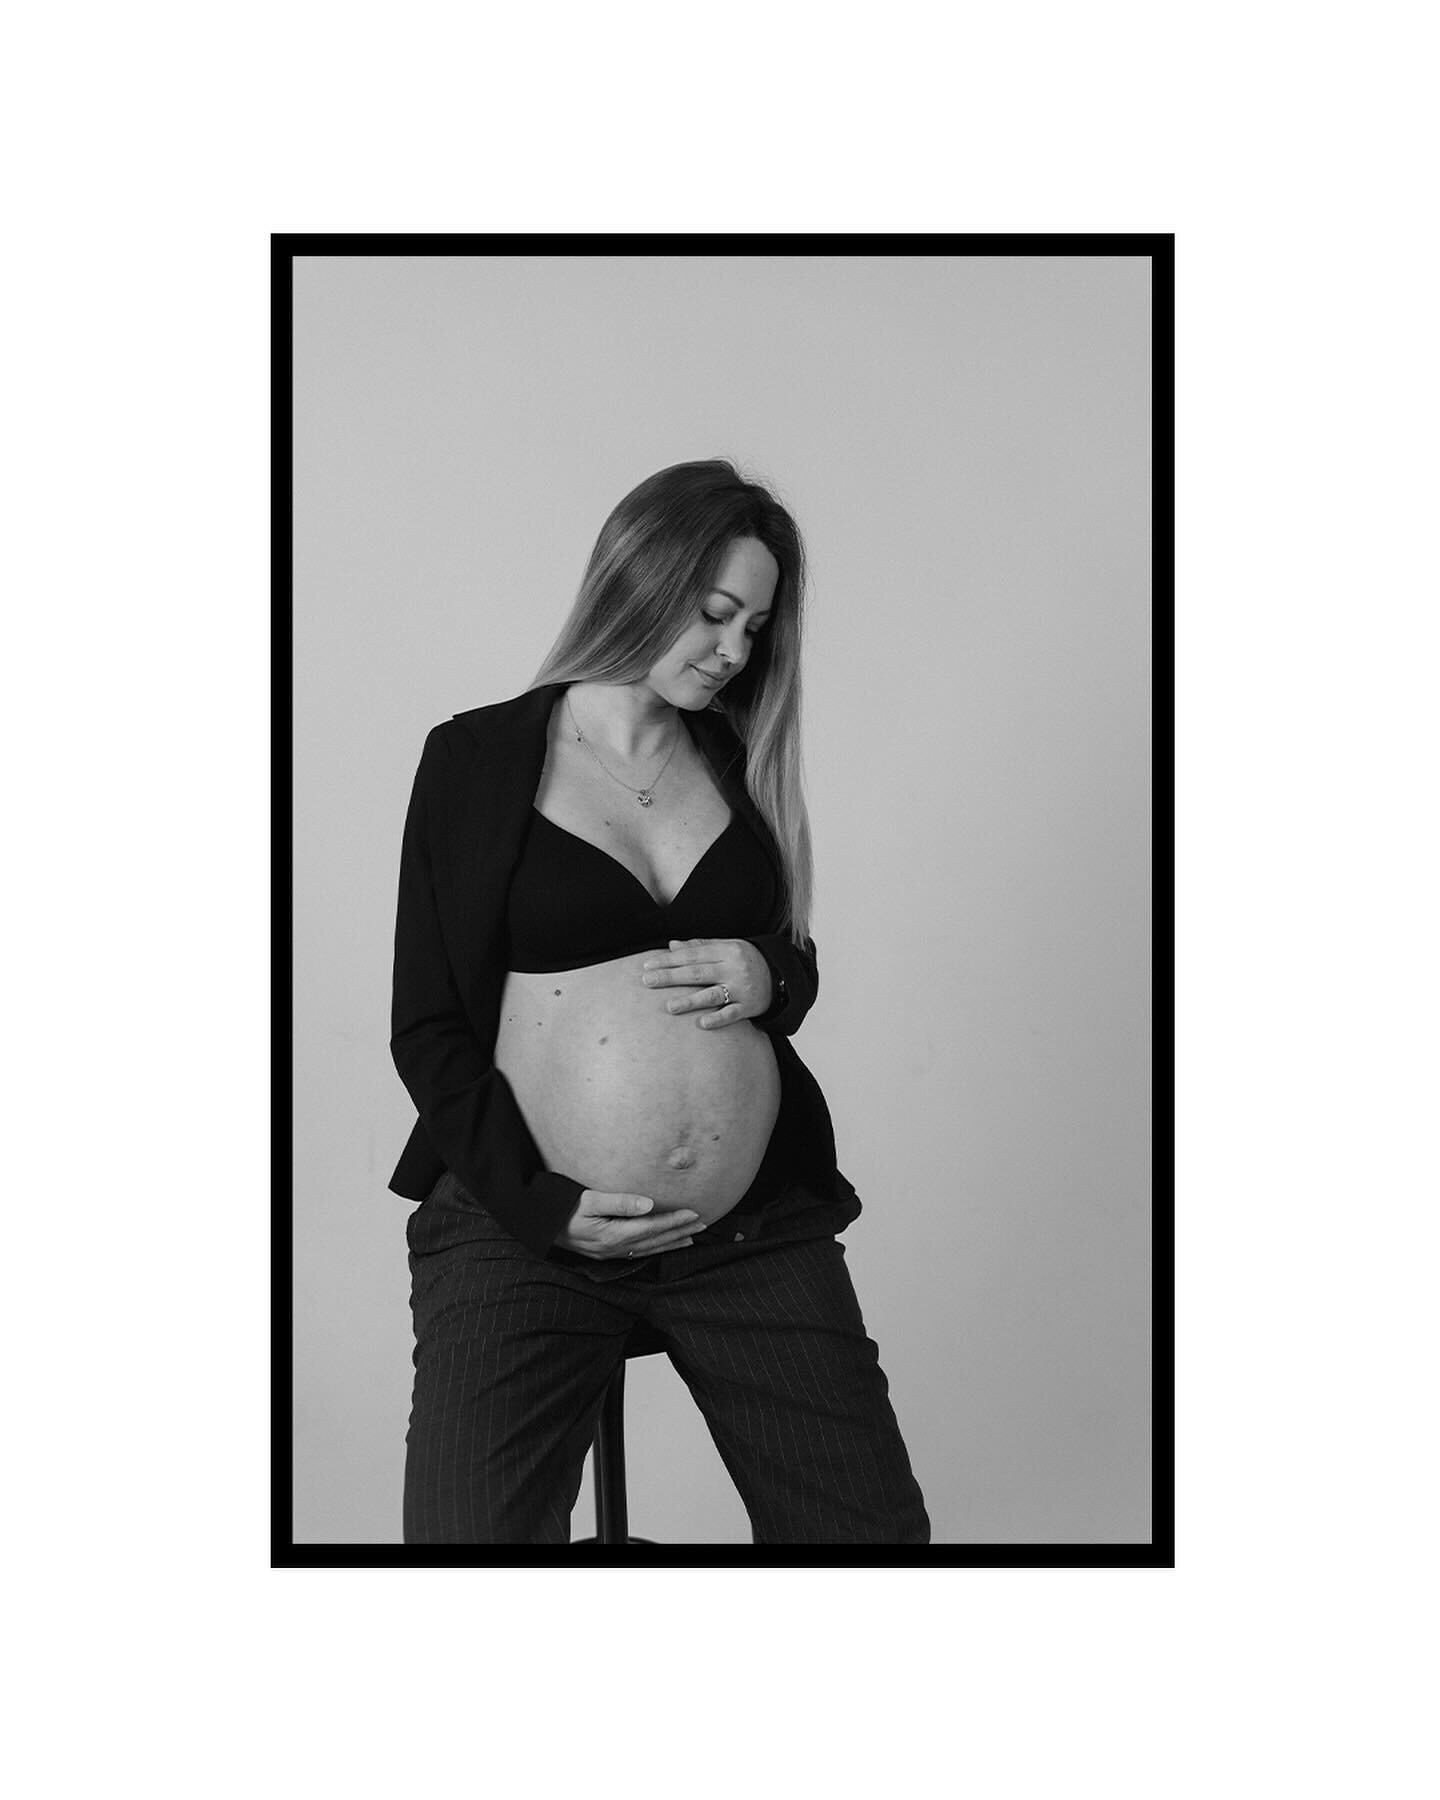 Nika v studiu 🤍

#nosecka #nosecniskofotografiranje #pregophotoshoot #nosečni&scaron;kofotografiranje #nosečka #portretnofotografiranje